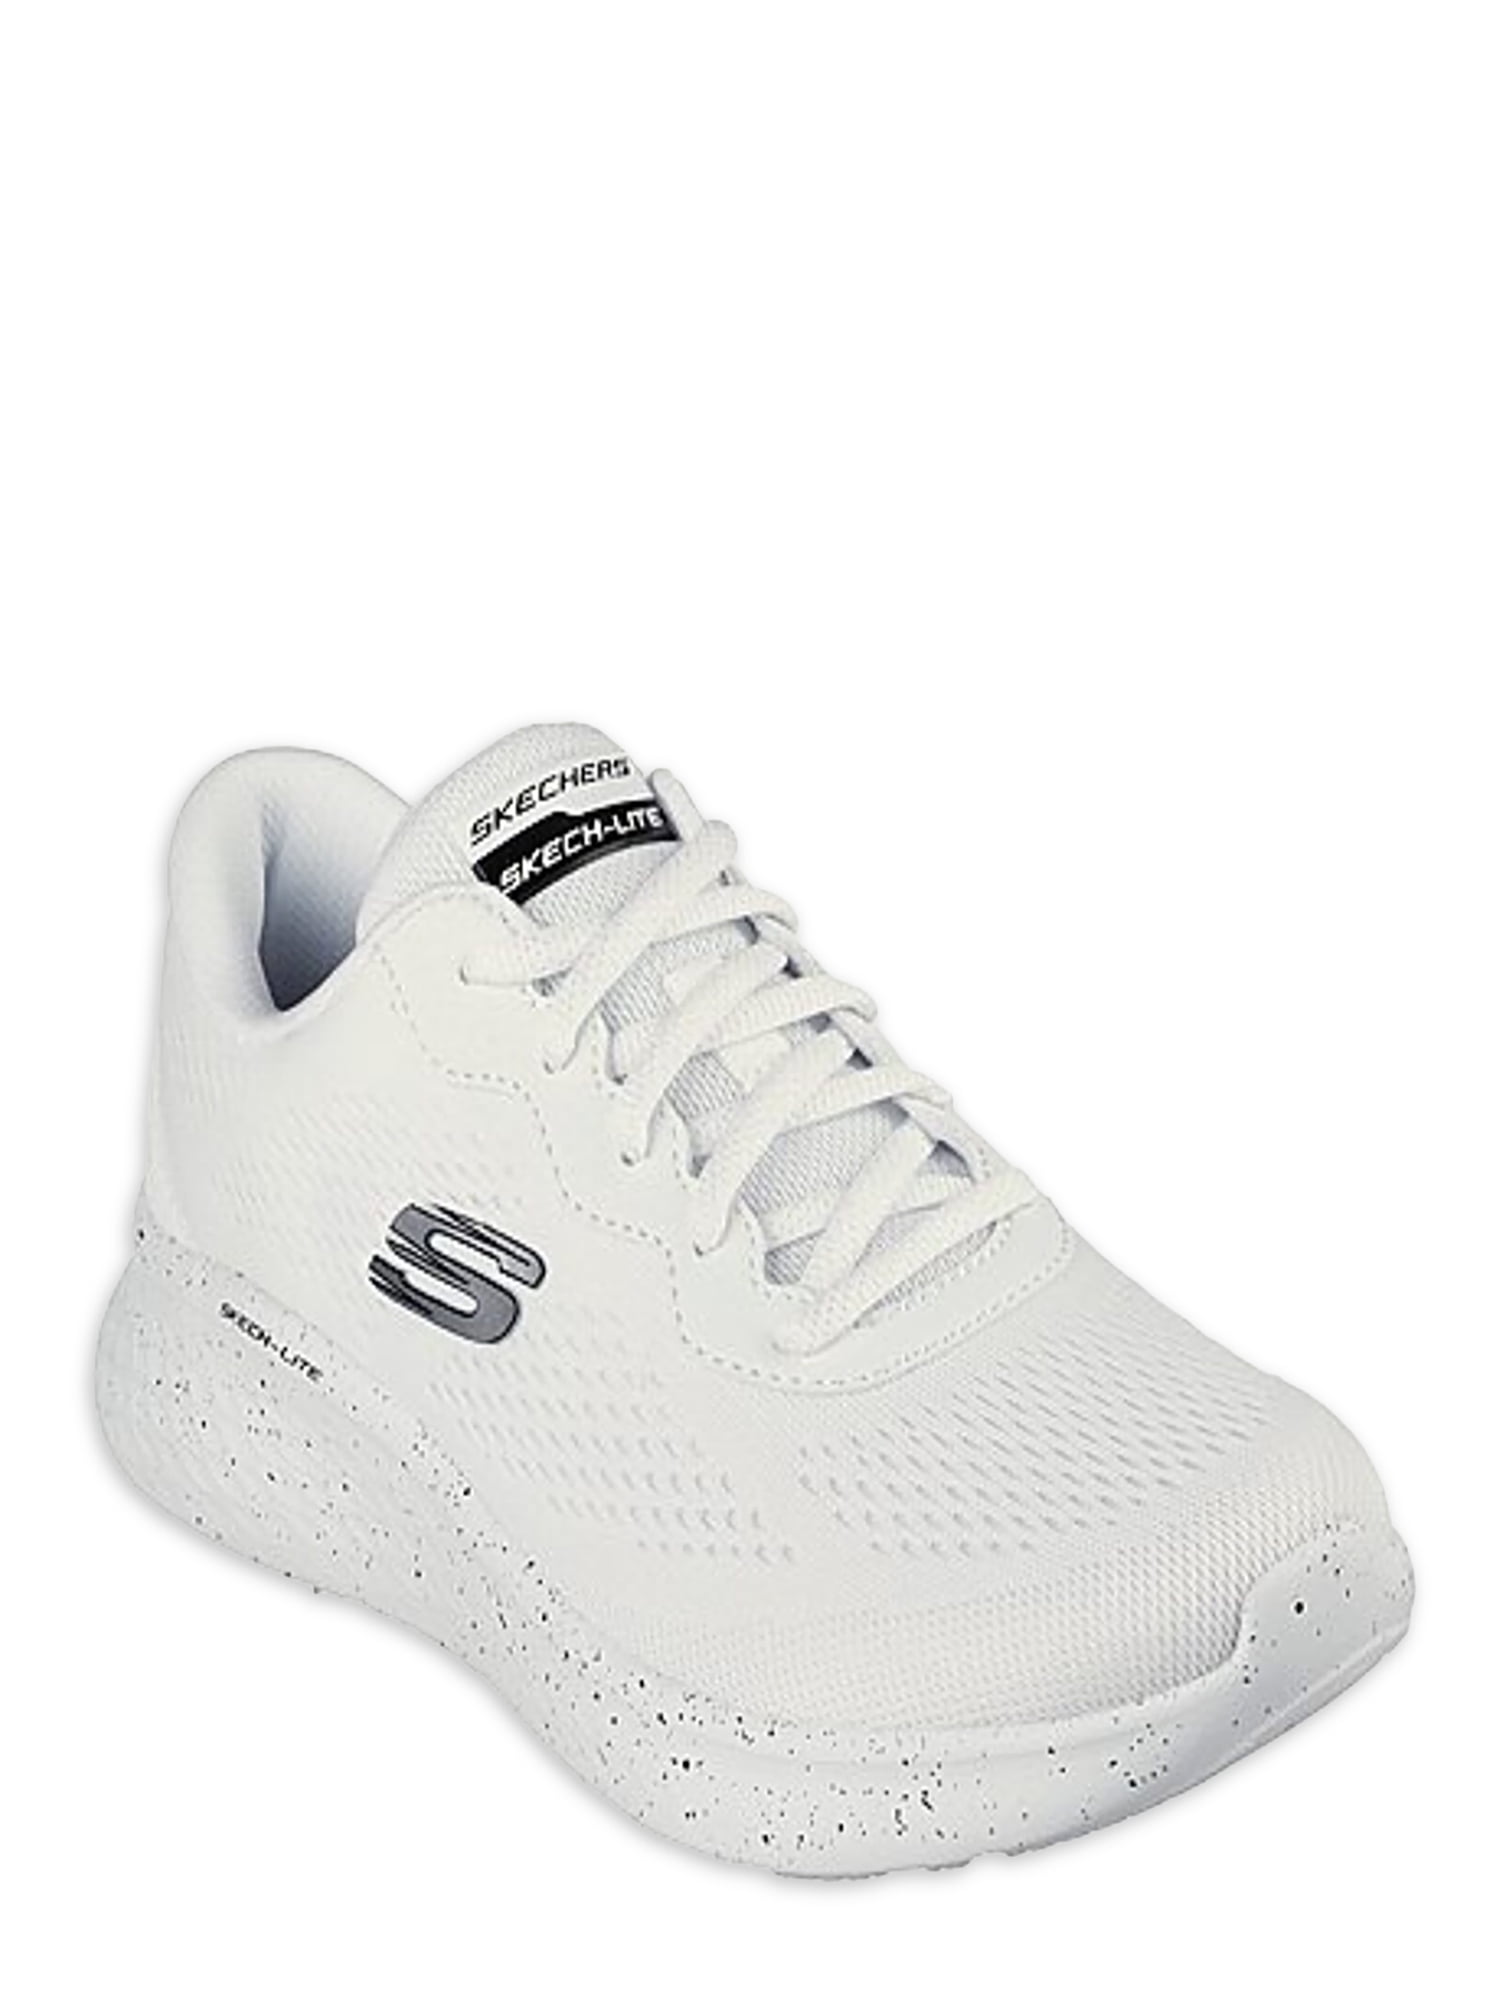 Skechers Skech-Lite Pro Lace-up Athletic Sneaker - Walmart.com